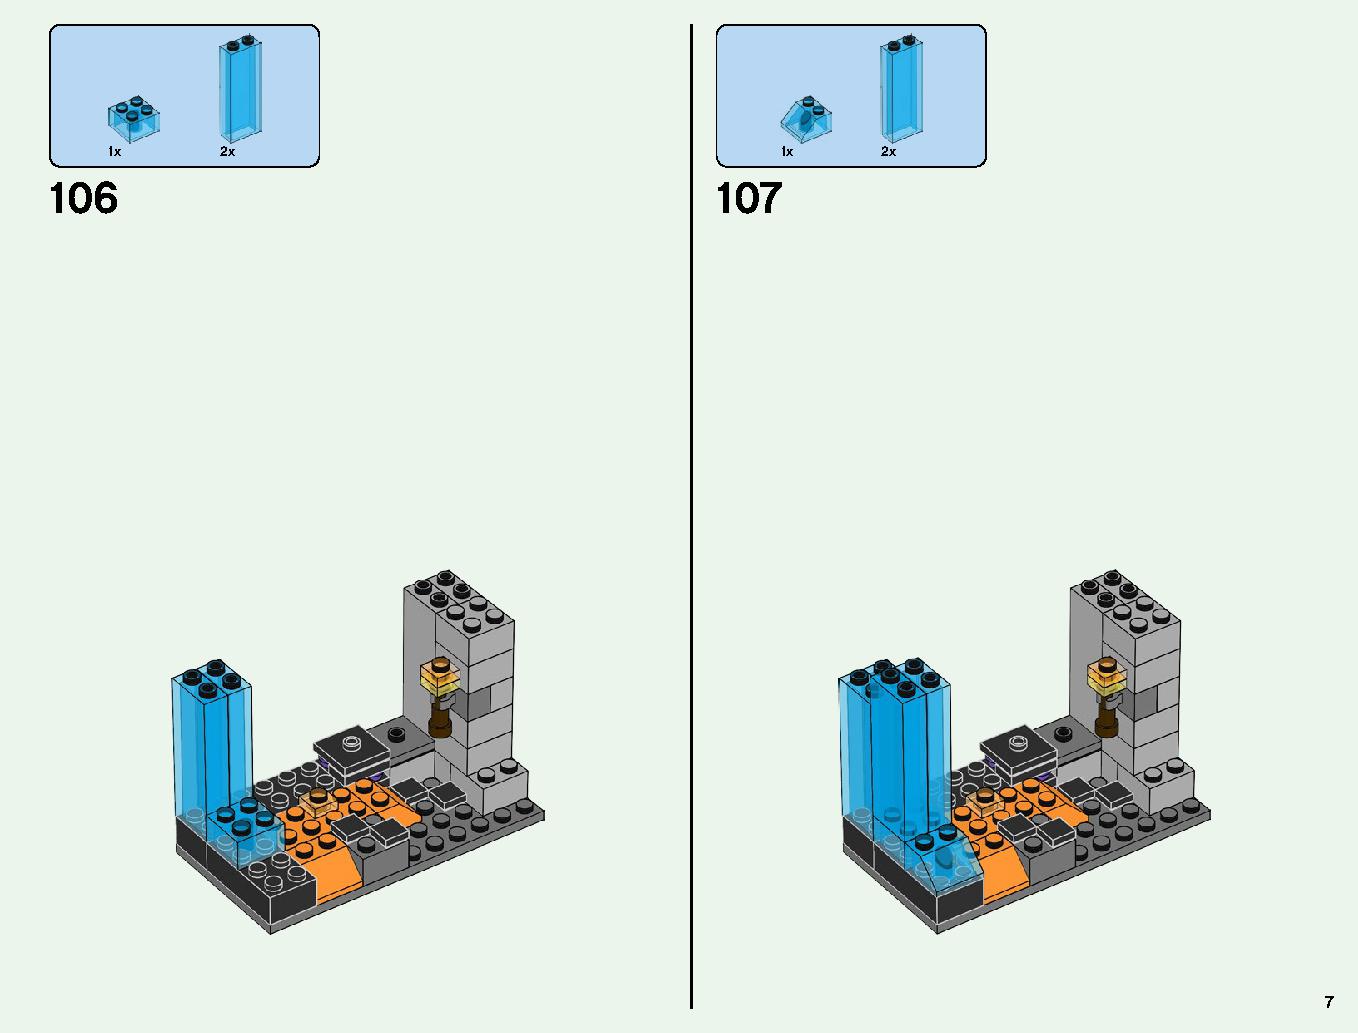 ベッドロックの冒険 21147 レゴの商品情報 レゴの説明書・組立方法 7 page